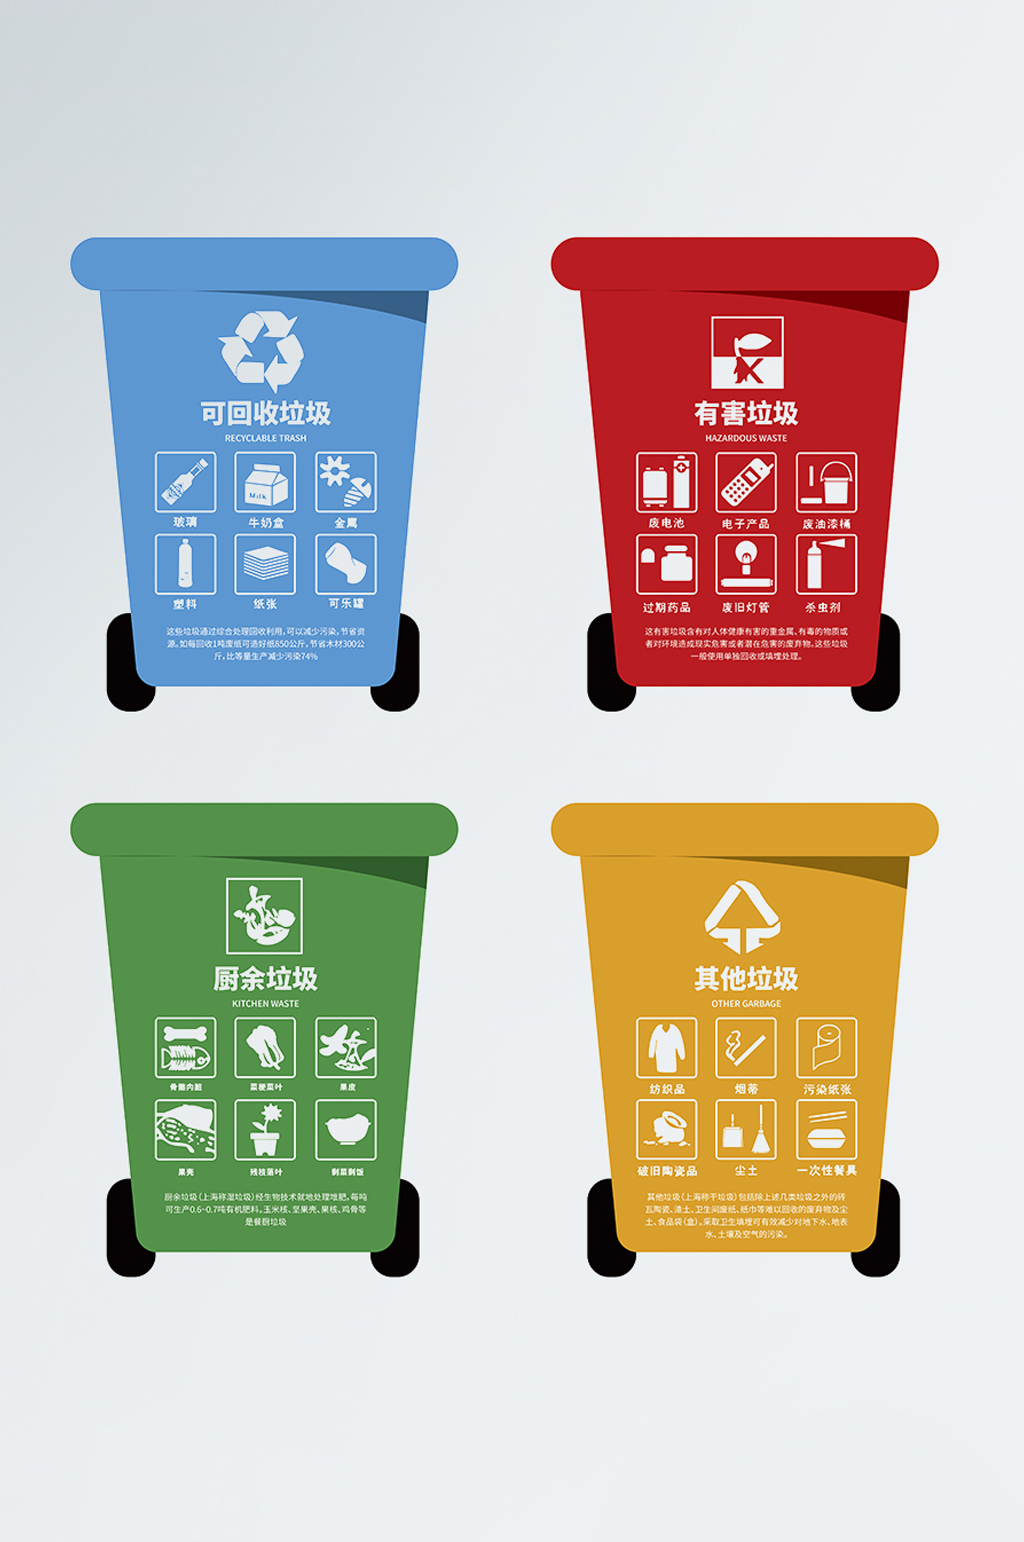 四种垃圾桶的图片卡通图片